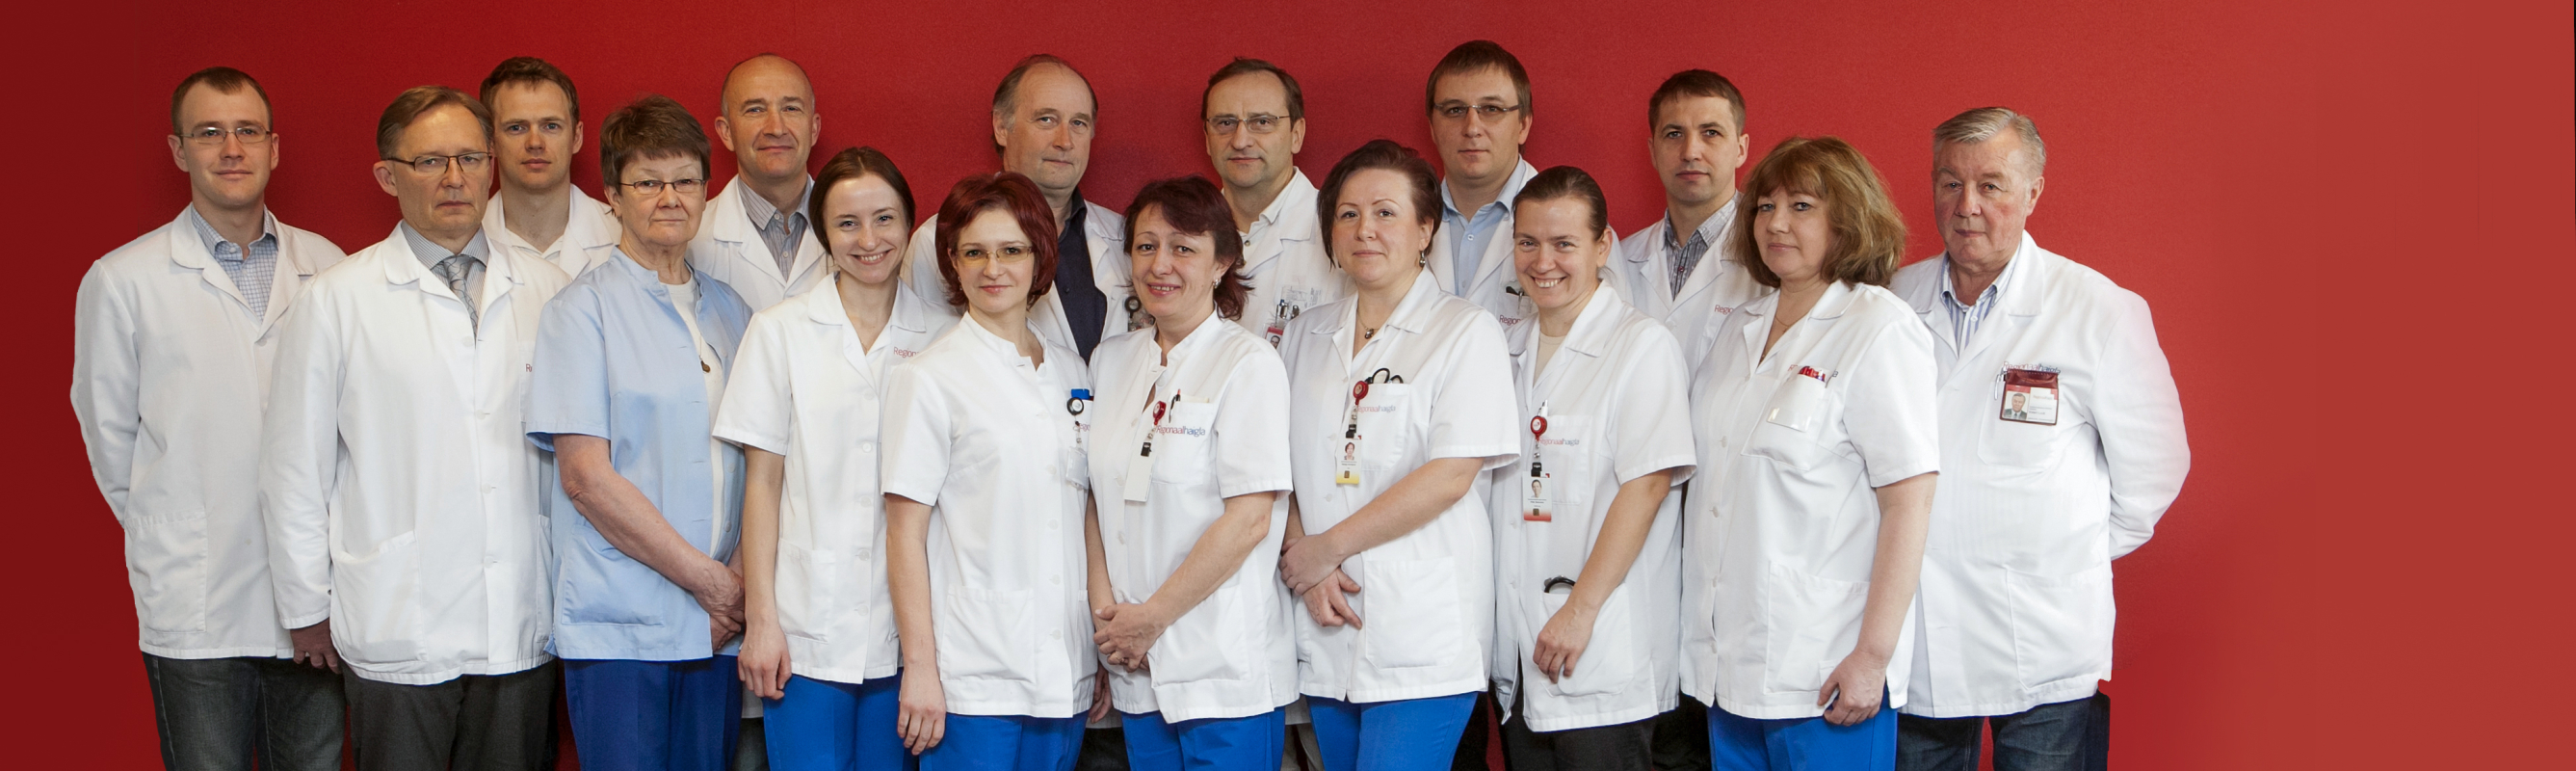 Rindkere- ja veresoontekirurgia osakonna sõbralik meeskond